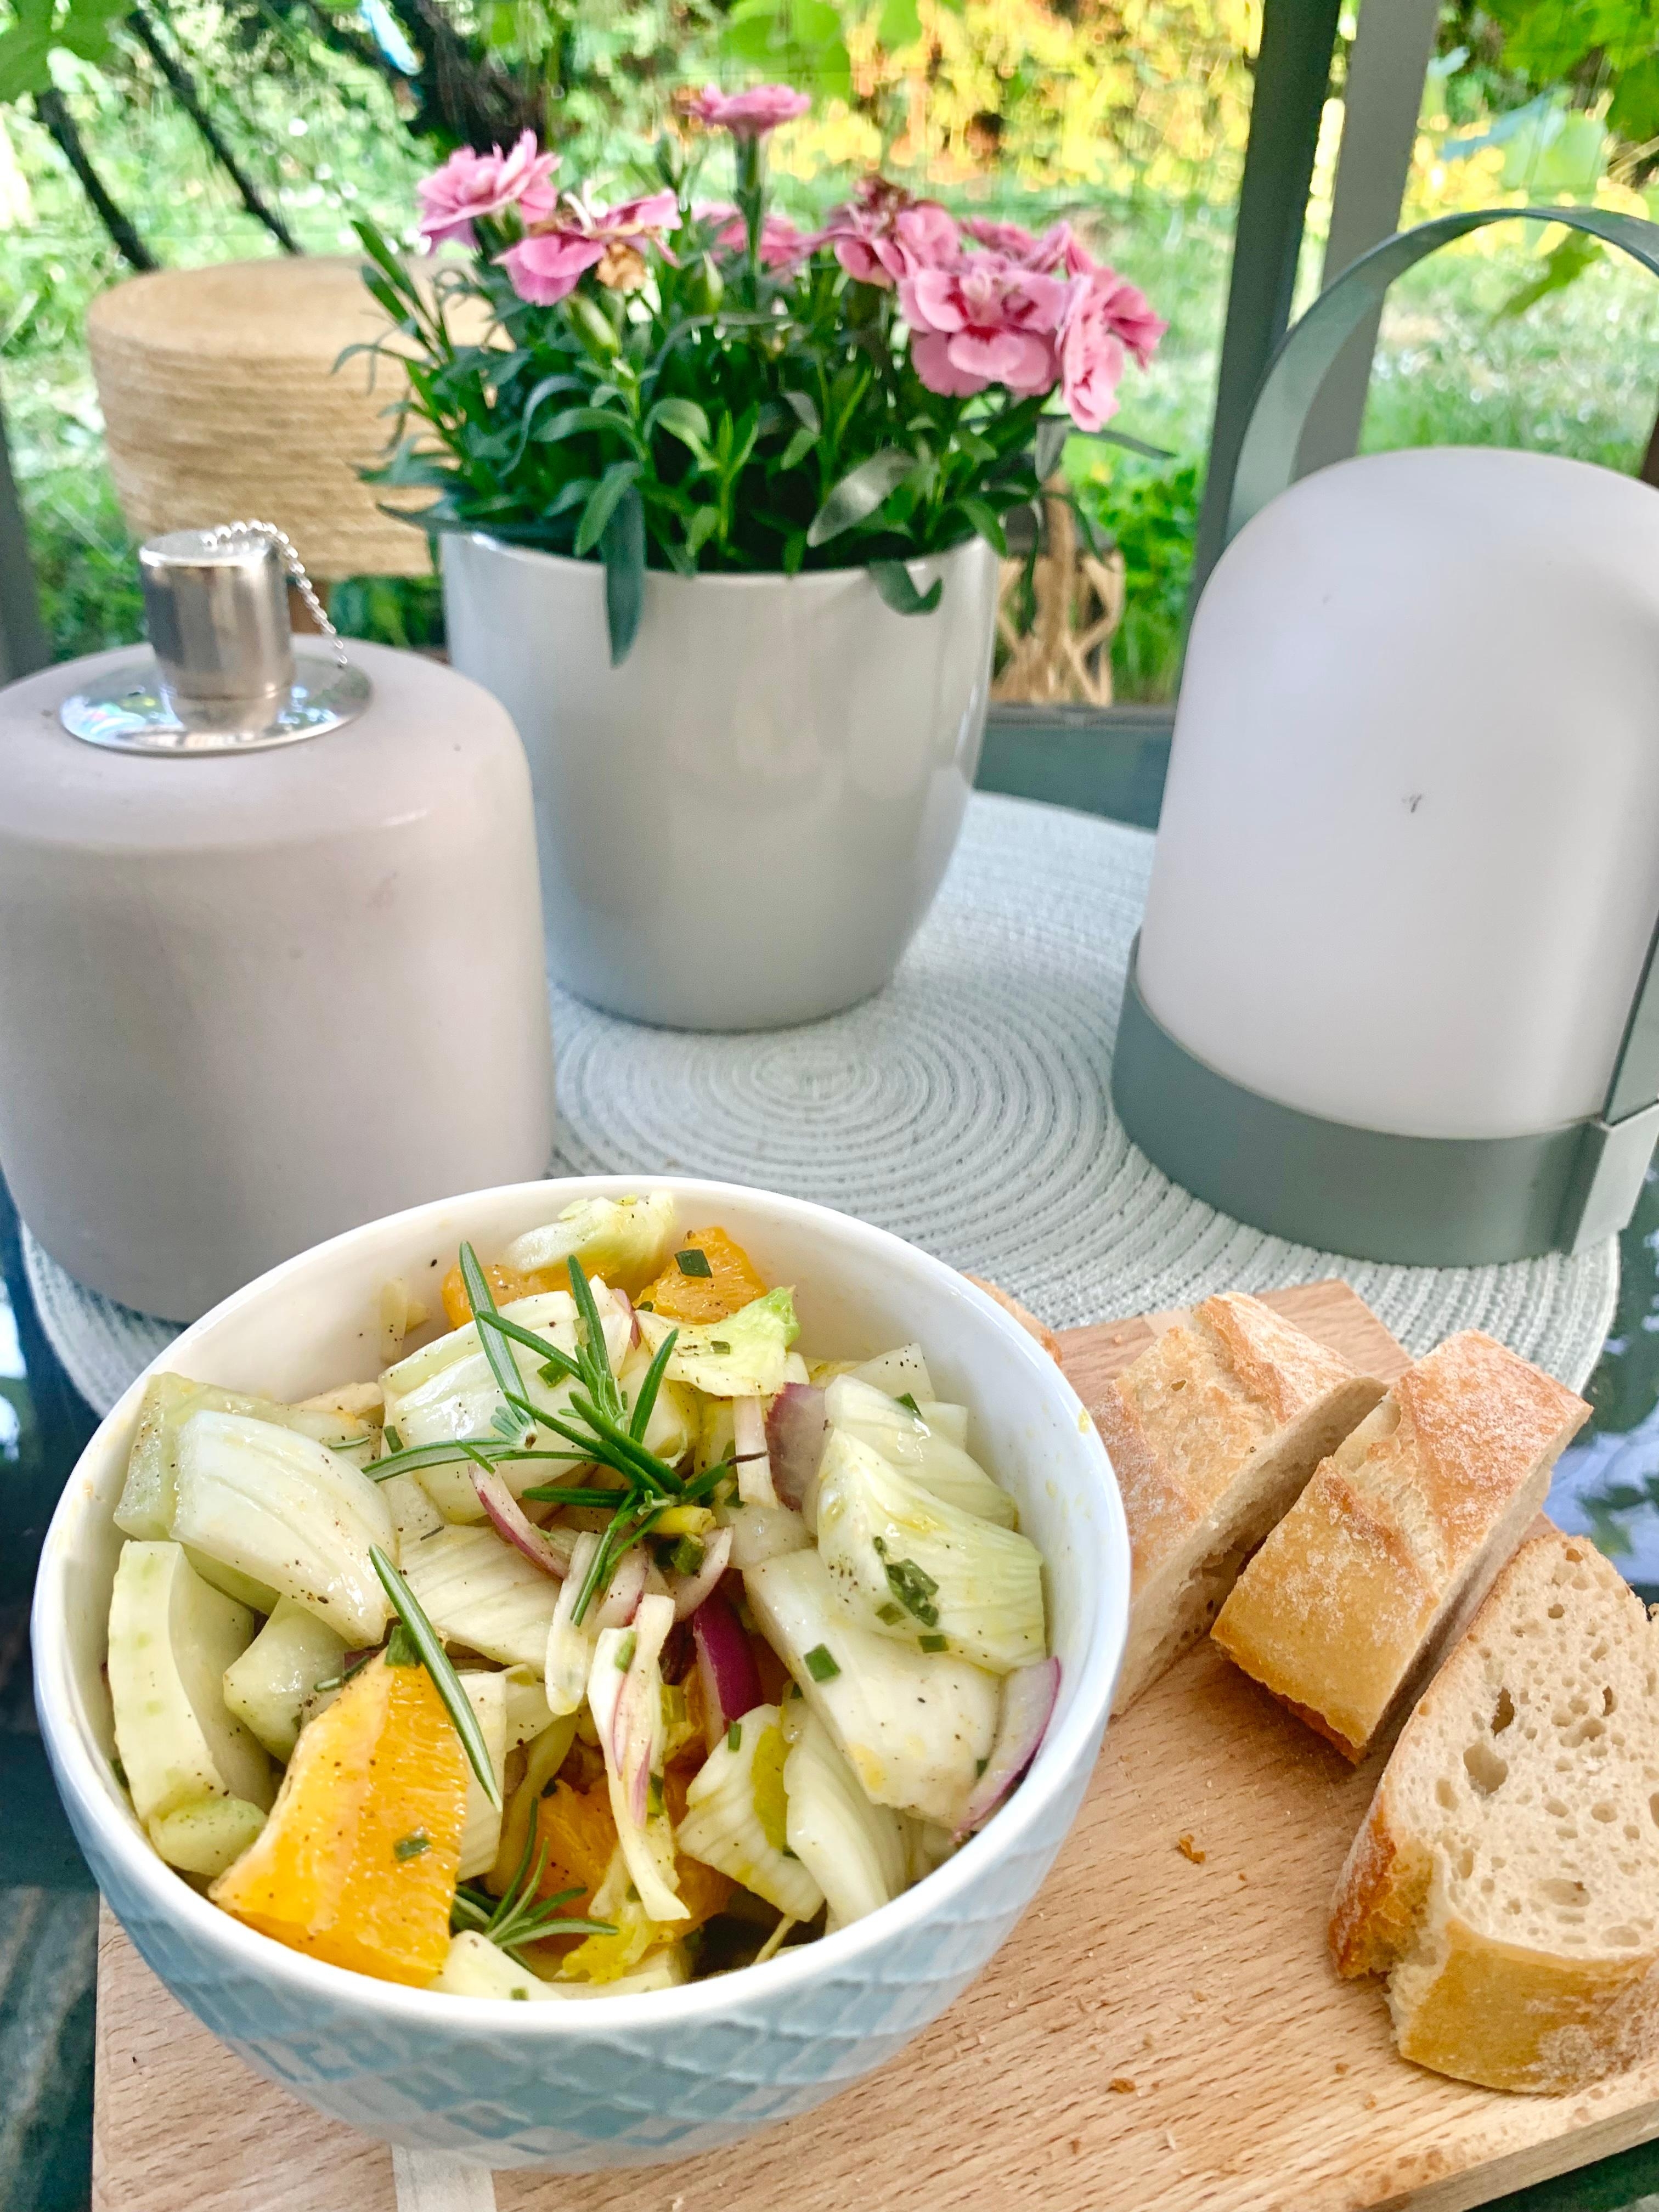 Sommer Salat 🍊

#fresh #food #sommer #essen #holzbret #tisch #flower #garten #outdoor 